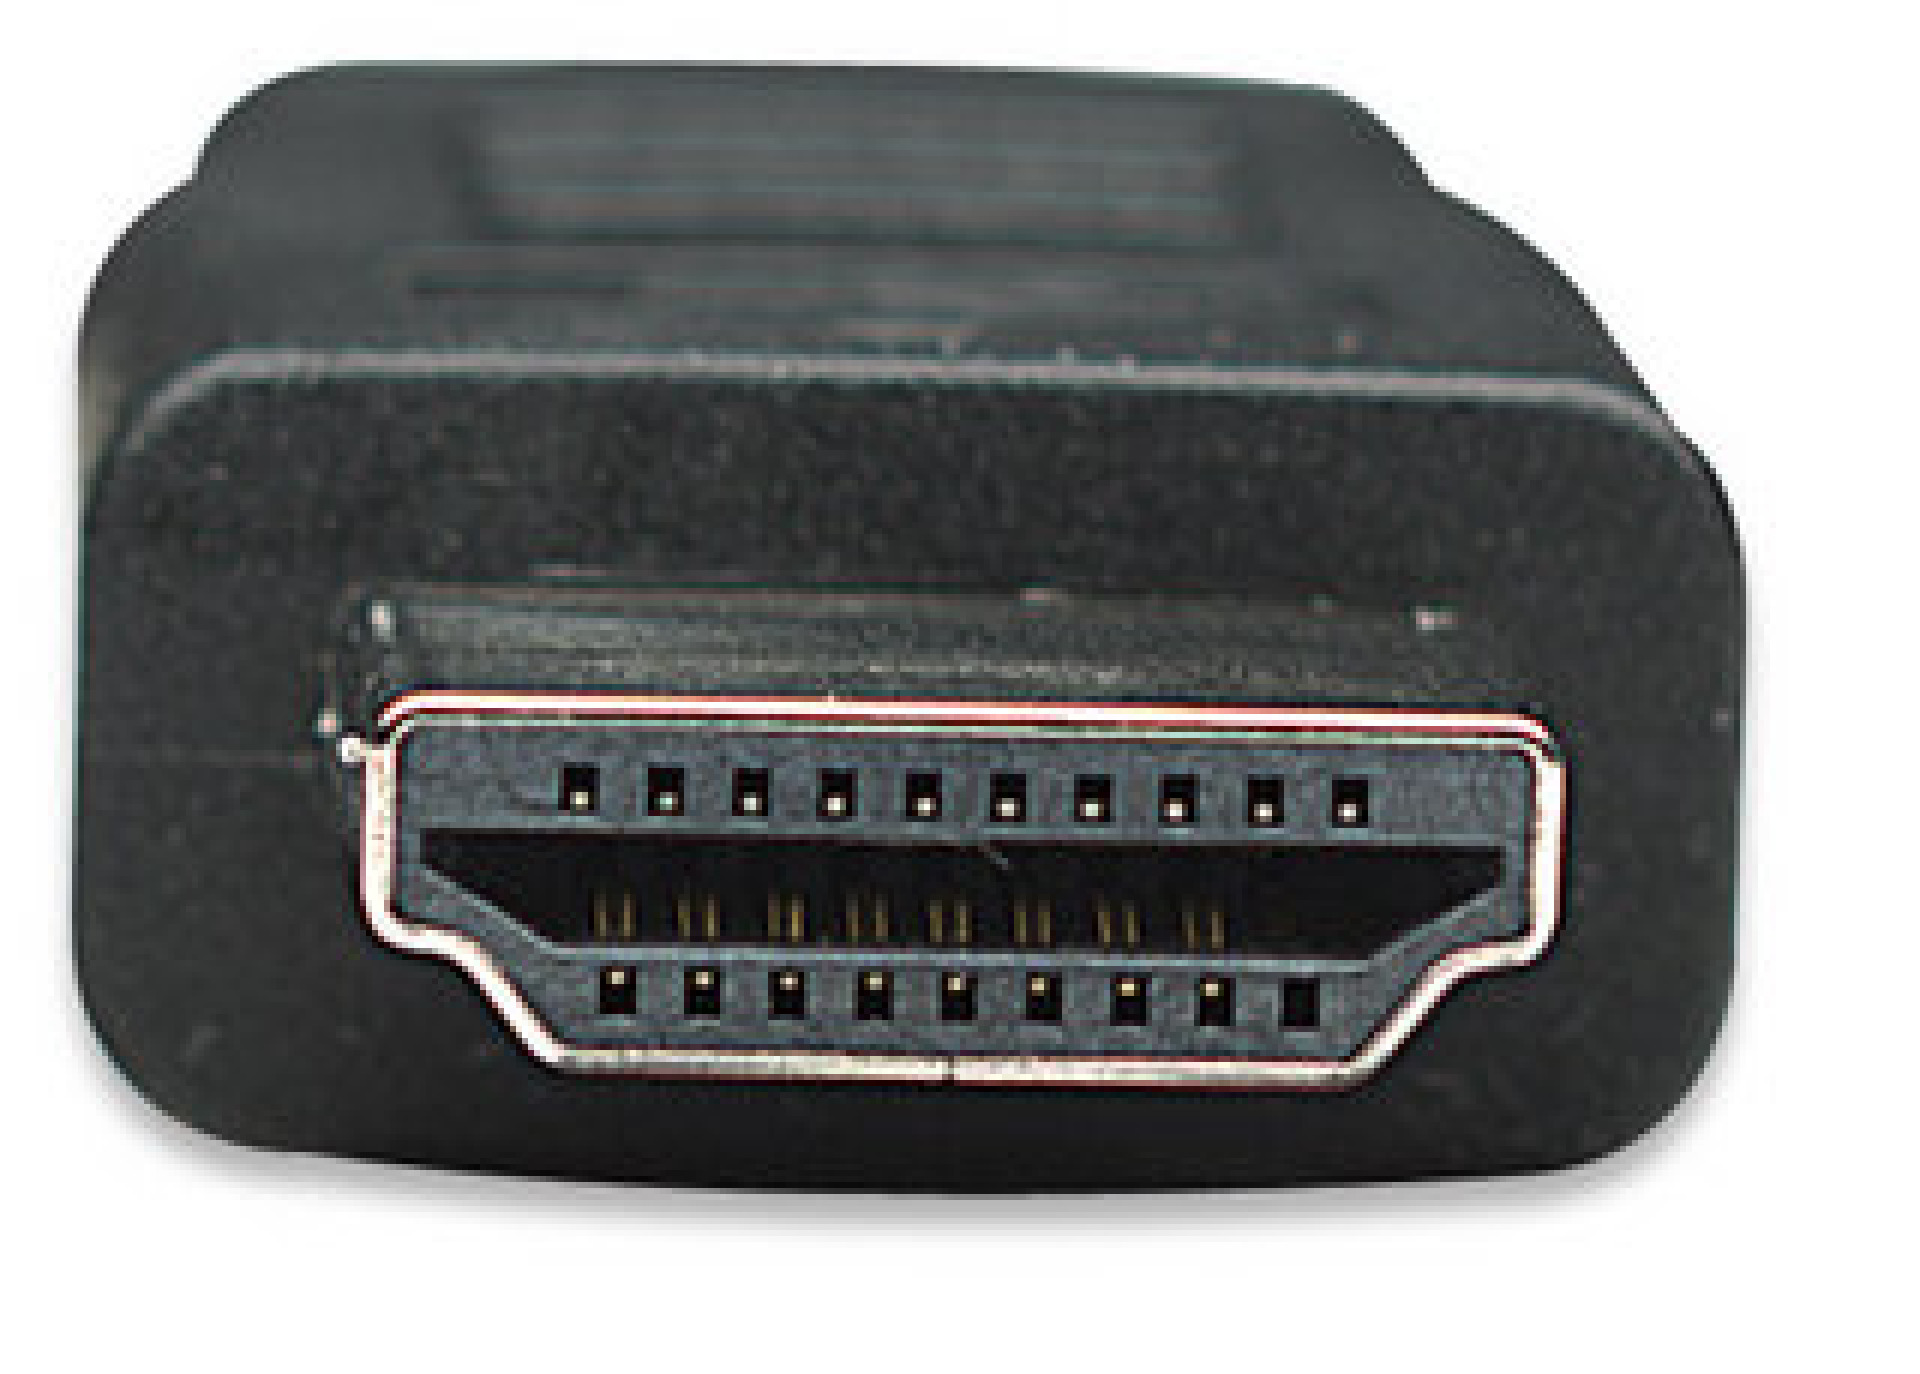 HDMI zu DVI-D Anschlusskabel, schwarz, 3 m